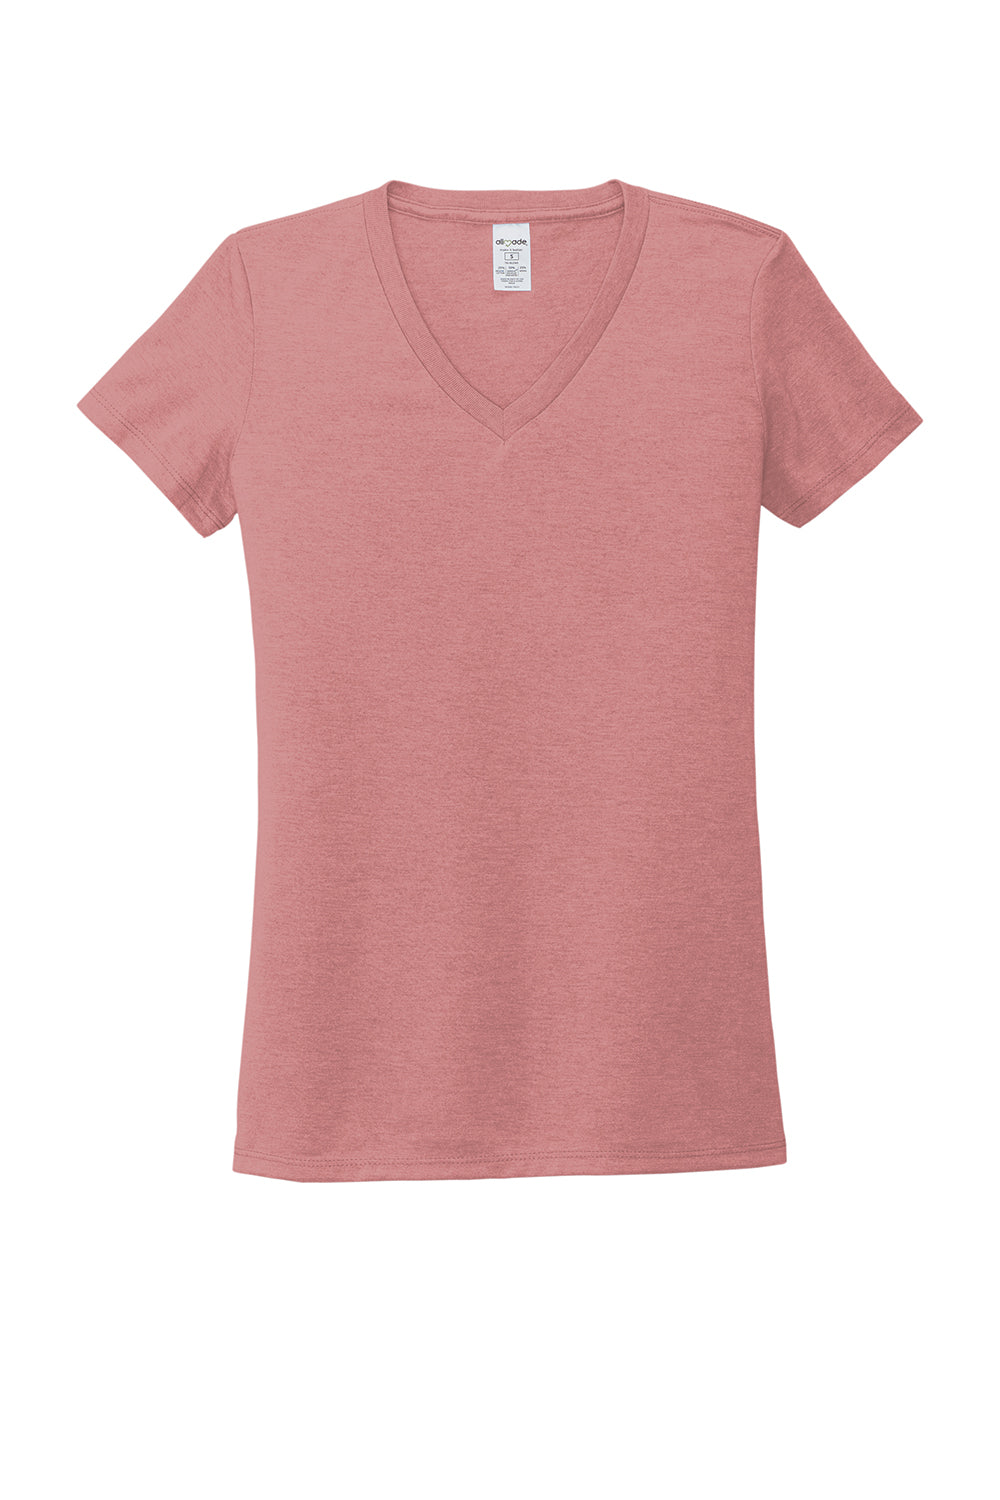 Allmade AL2018 Womens Short Sleeve V-Neck T-Shirt Vintage Rose Pink Flat Front